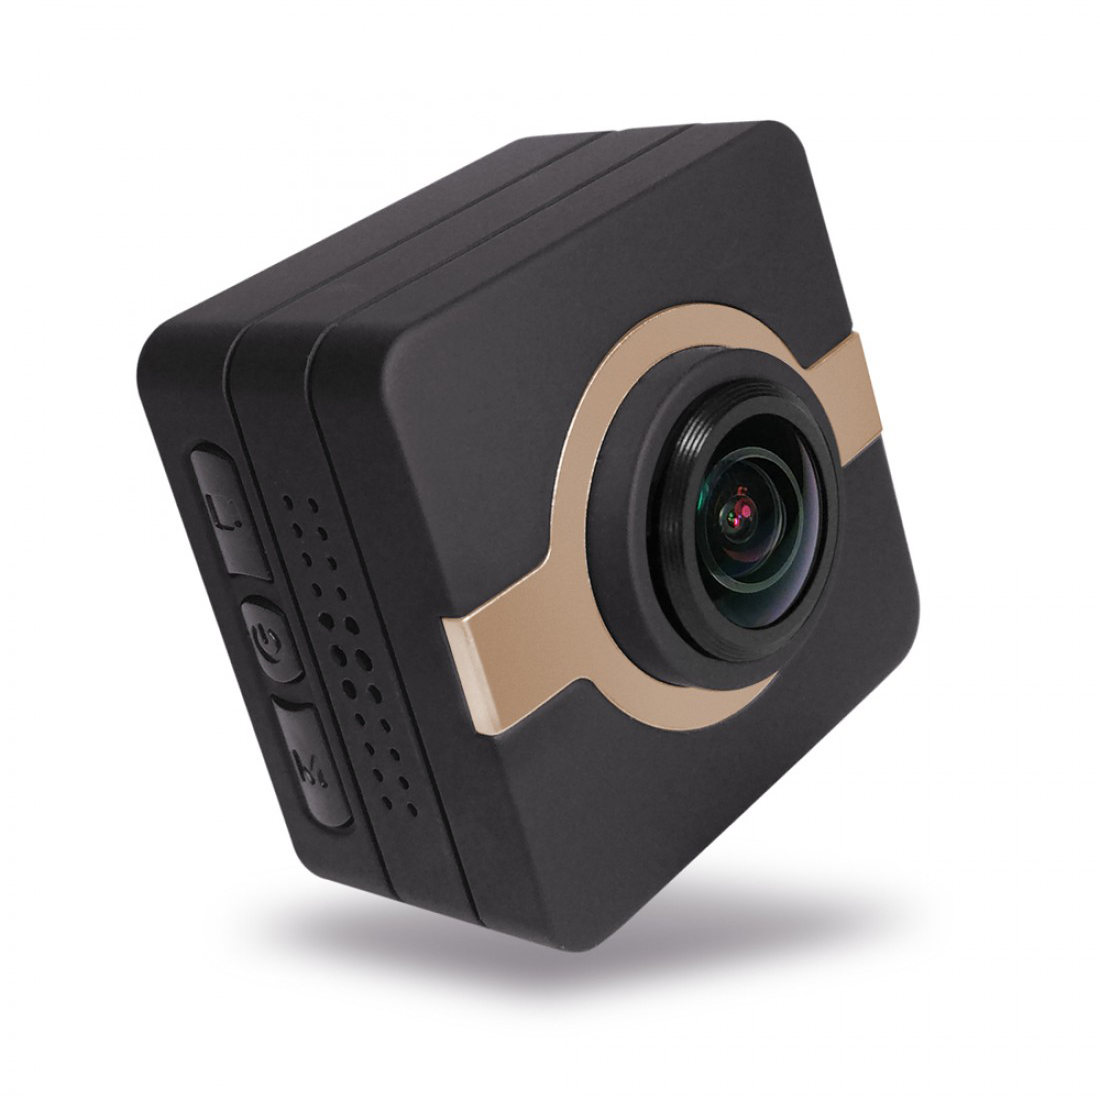 Matecam X1 Mini Action Camera Tableau de bord de voiture Caméra Cam enregistreur 4K-HI Ultra HD étanche Caméscope DV 16MP 160 degrés grand angle WIFI/G-Sensor/Gyro Stabilisation/Détection de mouvement/Télécommande Mini DVR clés de voiture micro RC cam Casque de vélo Cam Marron